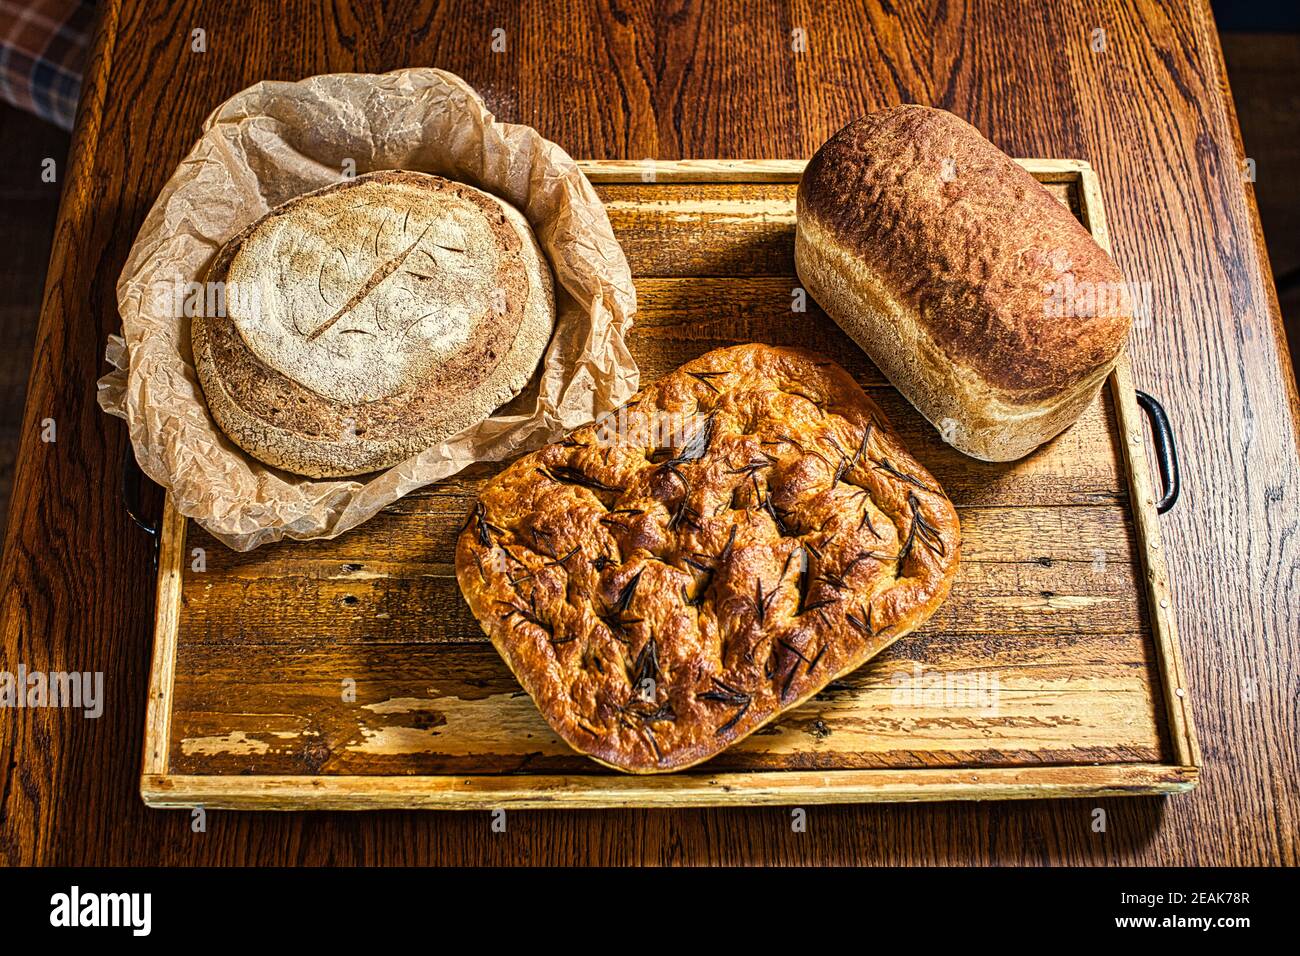 GRANDE-BRETAGNE / Angleterre / pain fraîchement cuit de seigle et de blé pain fait maison de levain / fabrication de pain artisanal . Banque D'Images